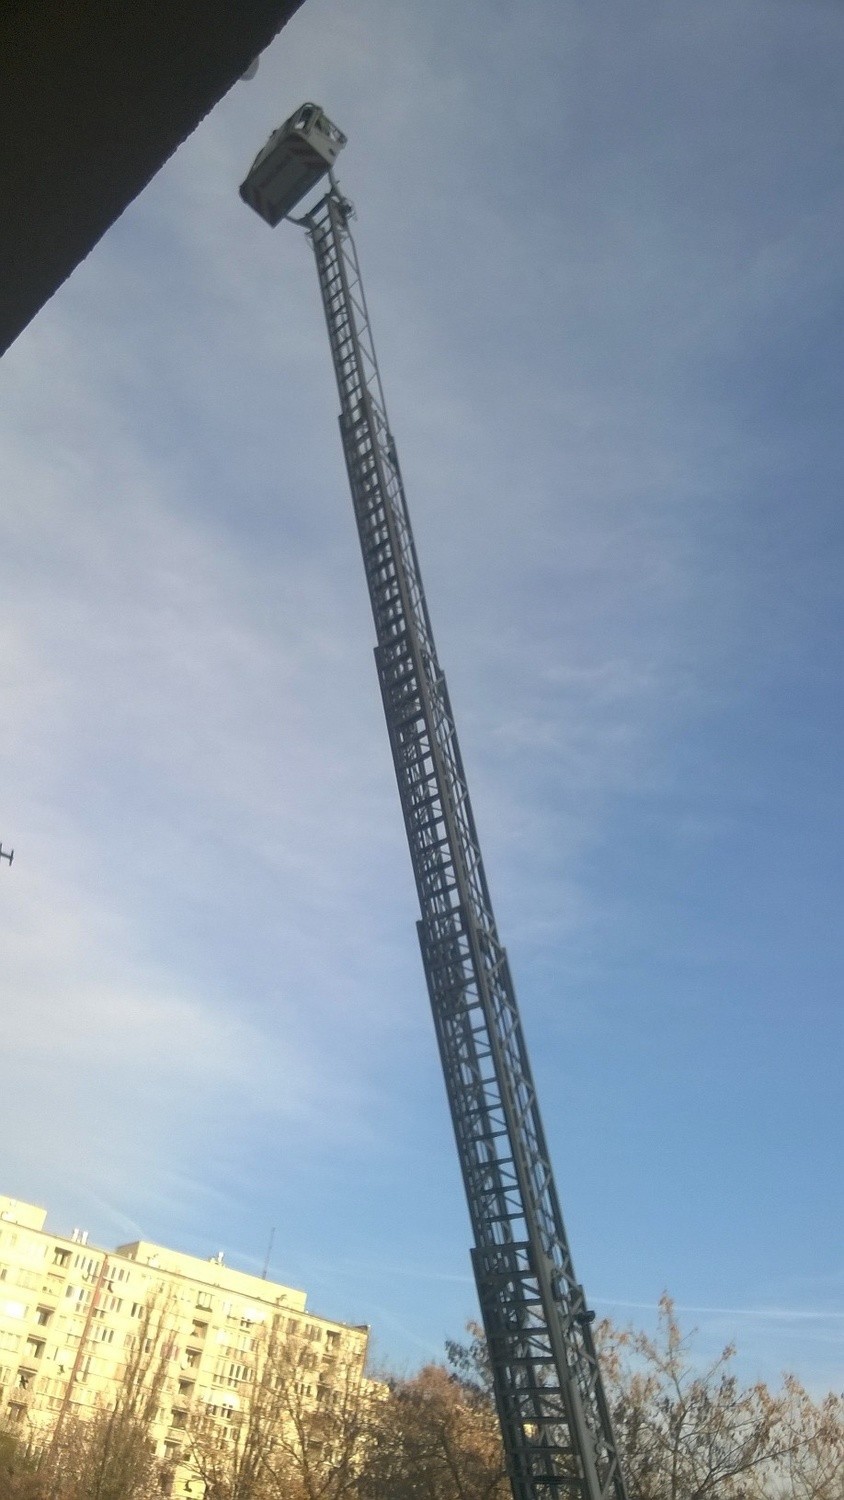 Akcja strażaków w wieżowcu przy Drukarskiej